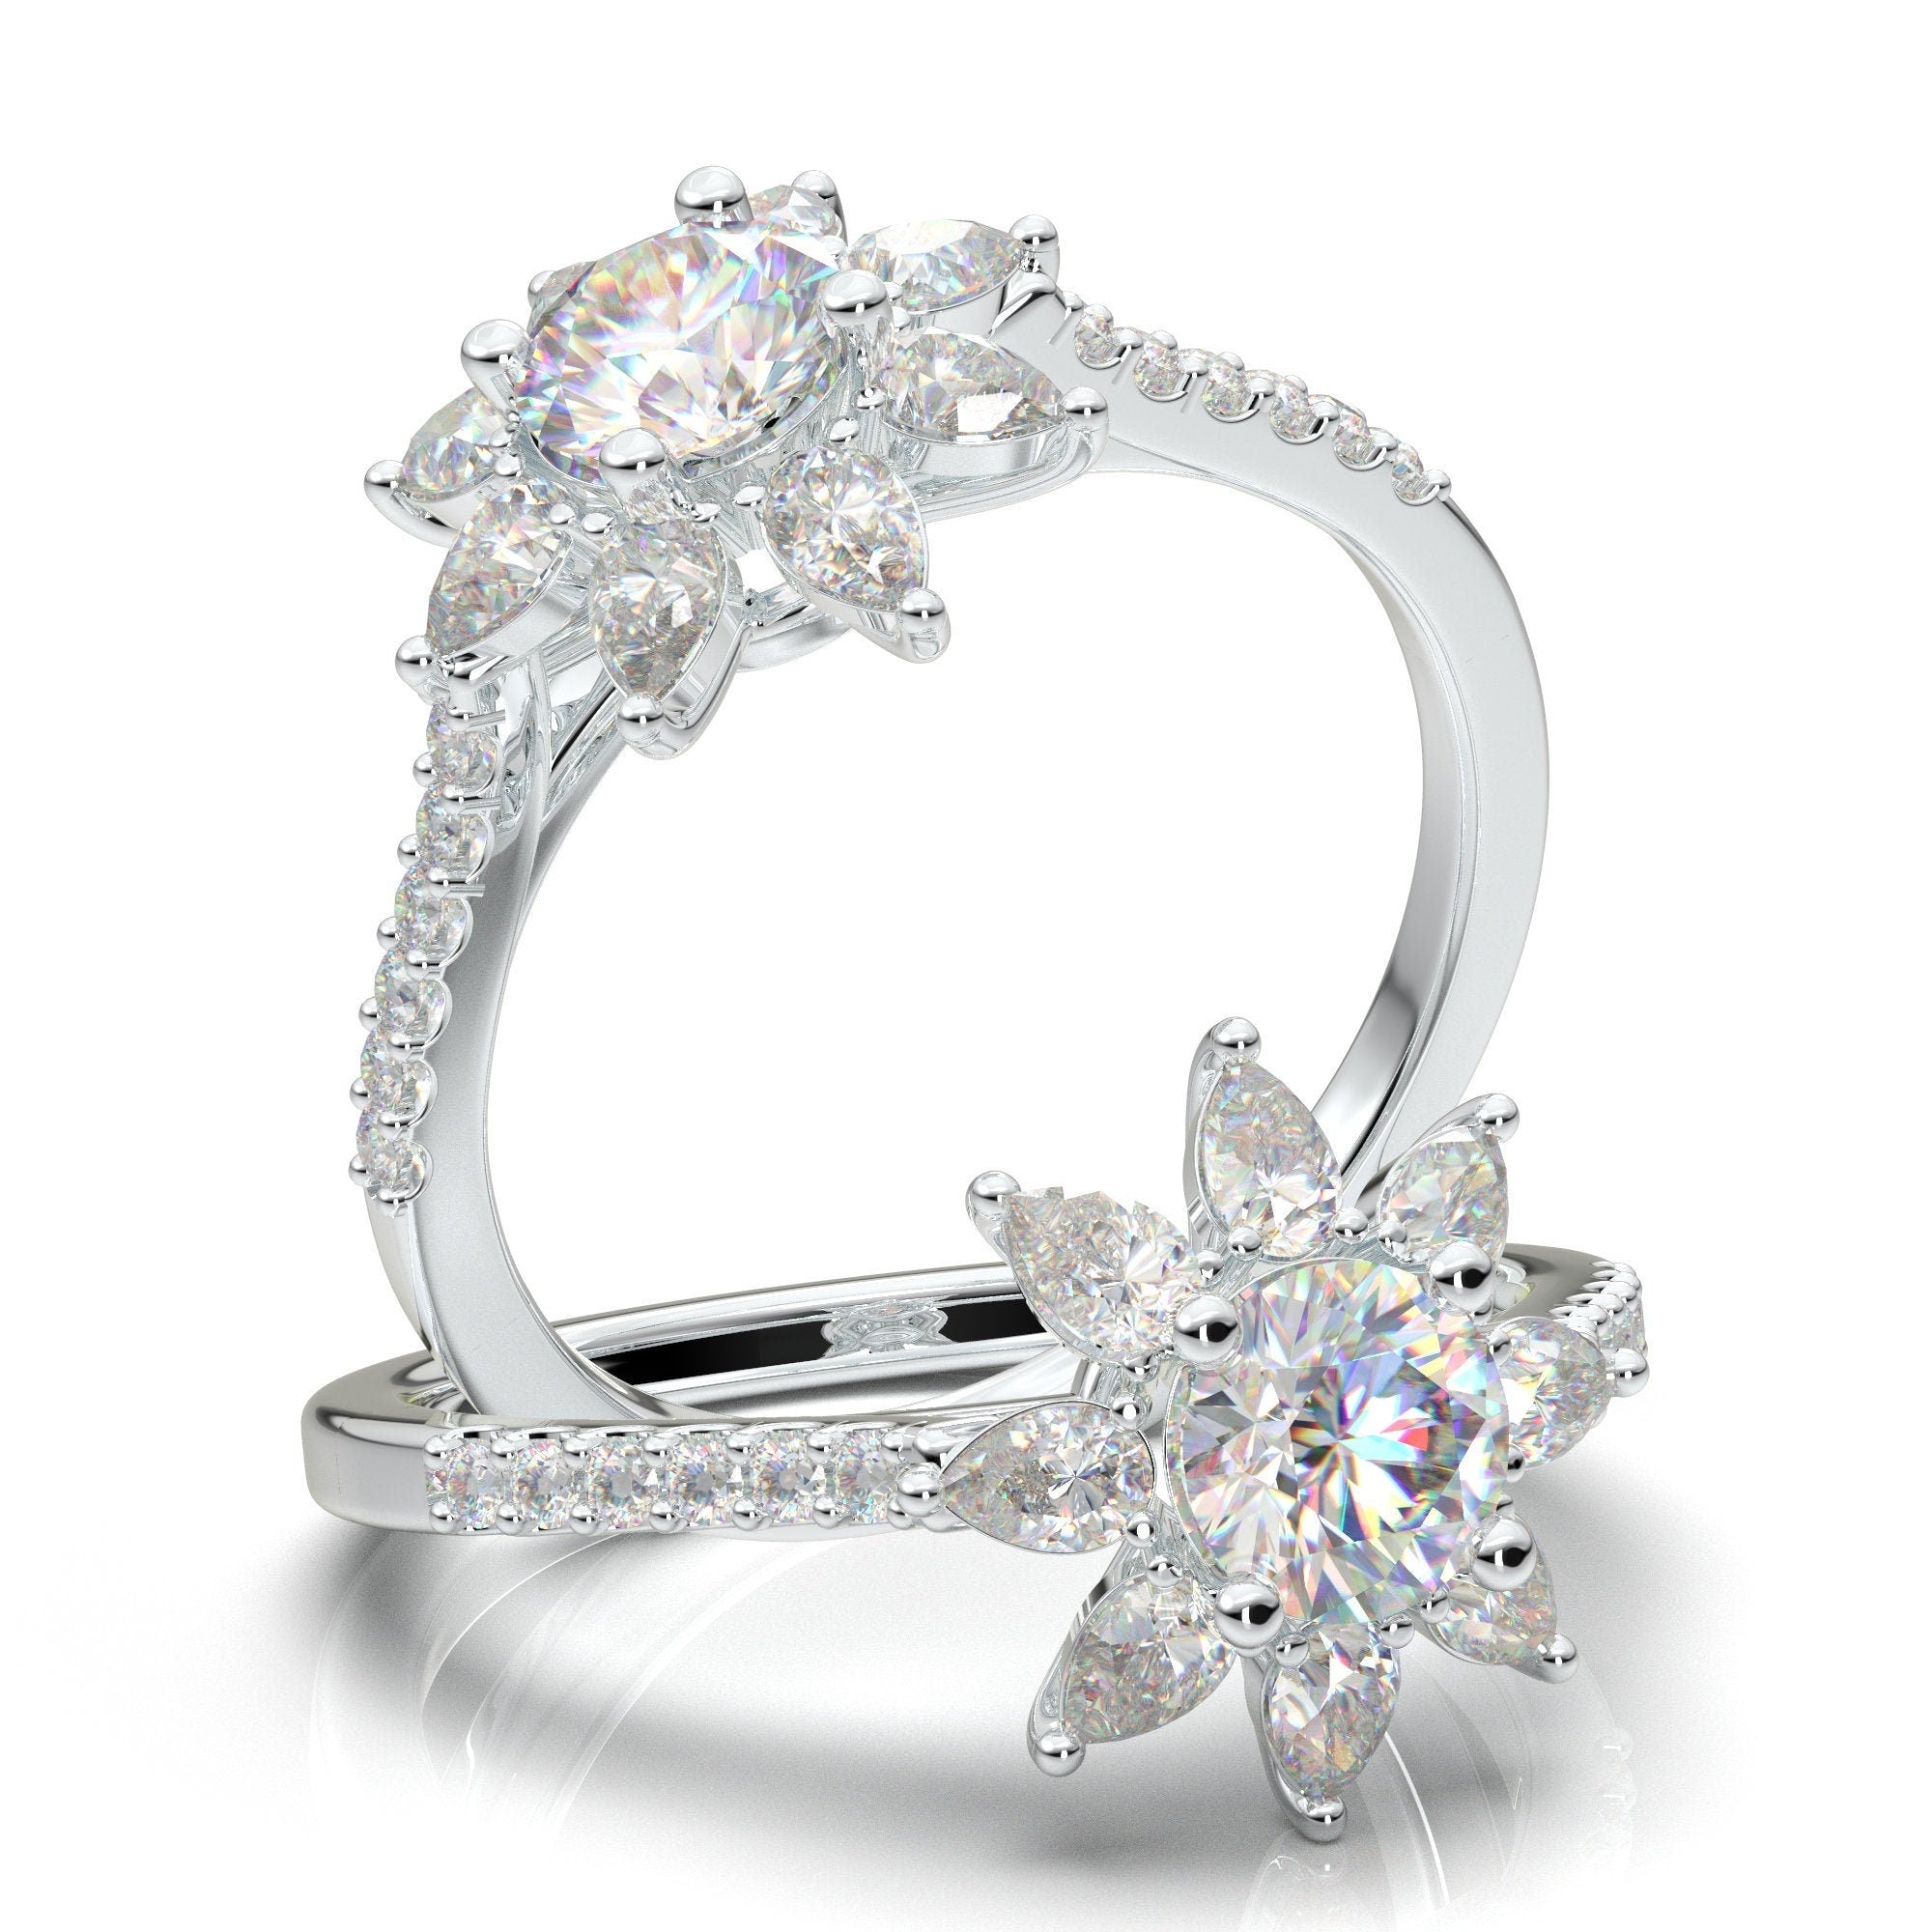 Diamond,हीरा खरीदते वक्त इन जरूरी बातों का रखें ध्यान - things to keep in  mind before buying diamond - Navbharat Times